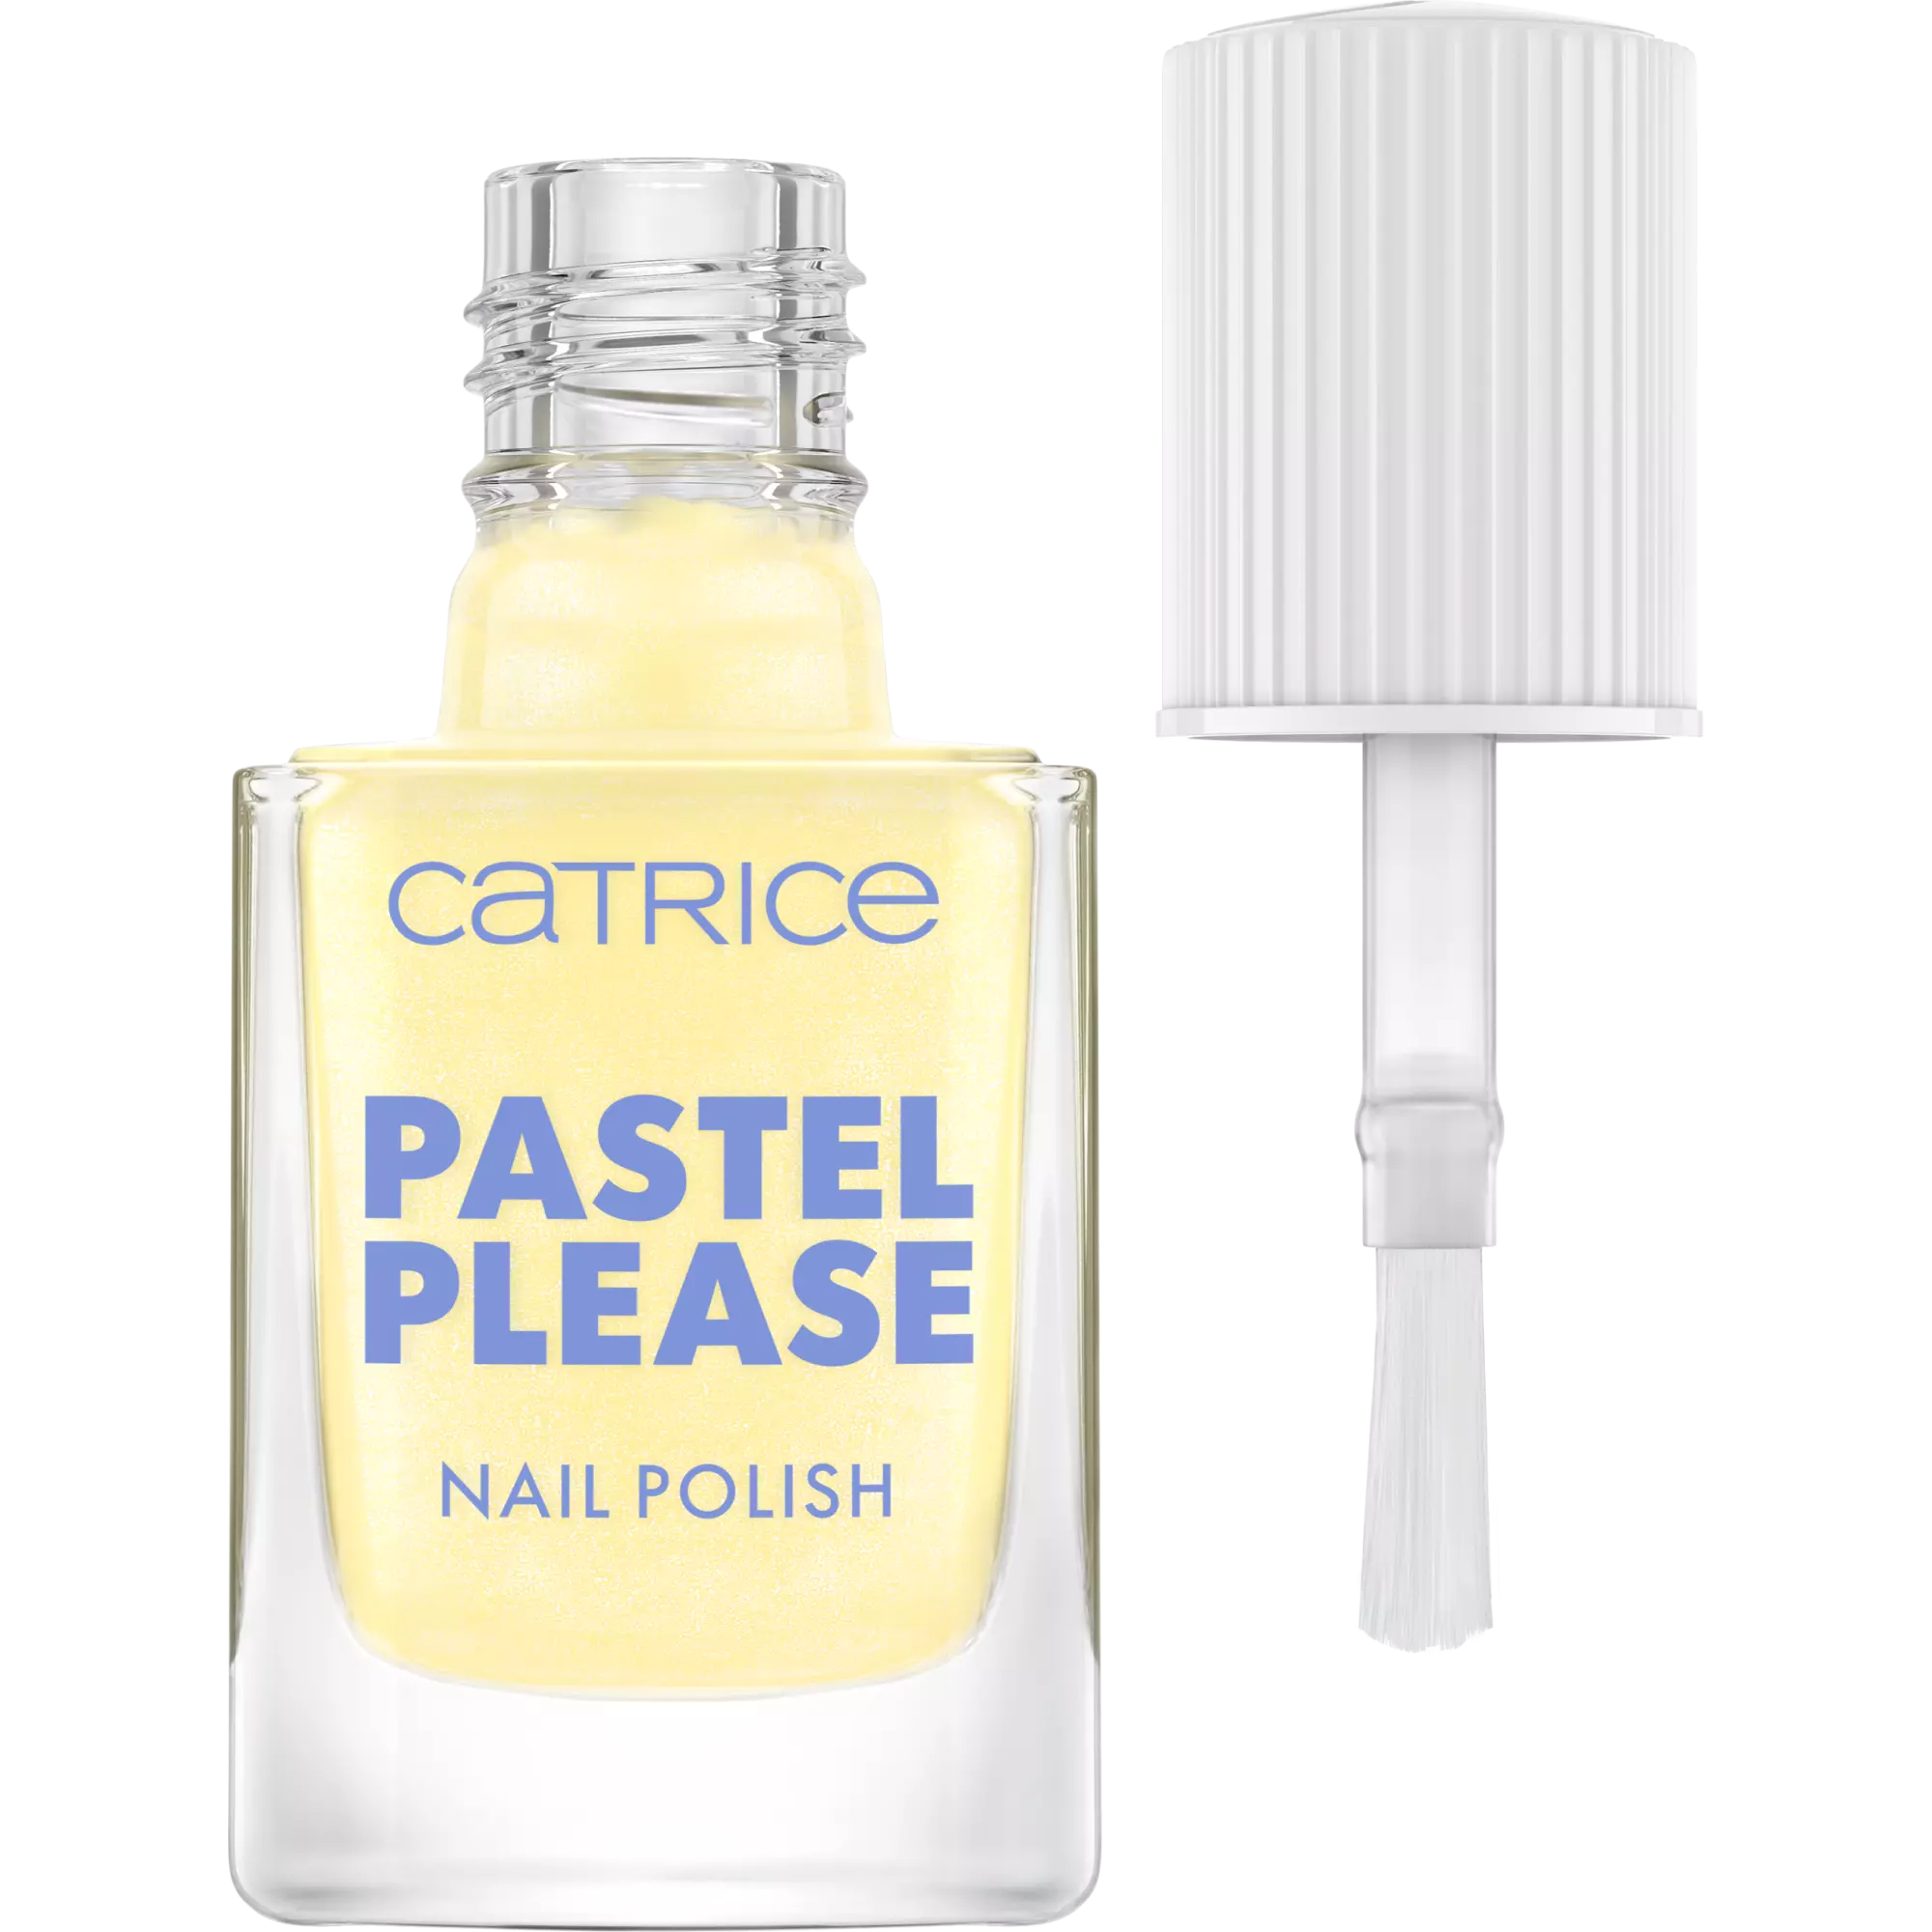 Catrice Pastel Please Nail Polish - 030 Sunny Honey